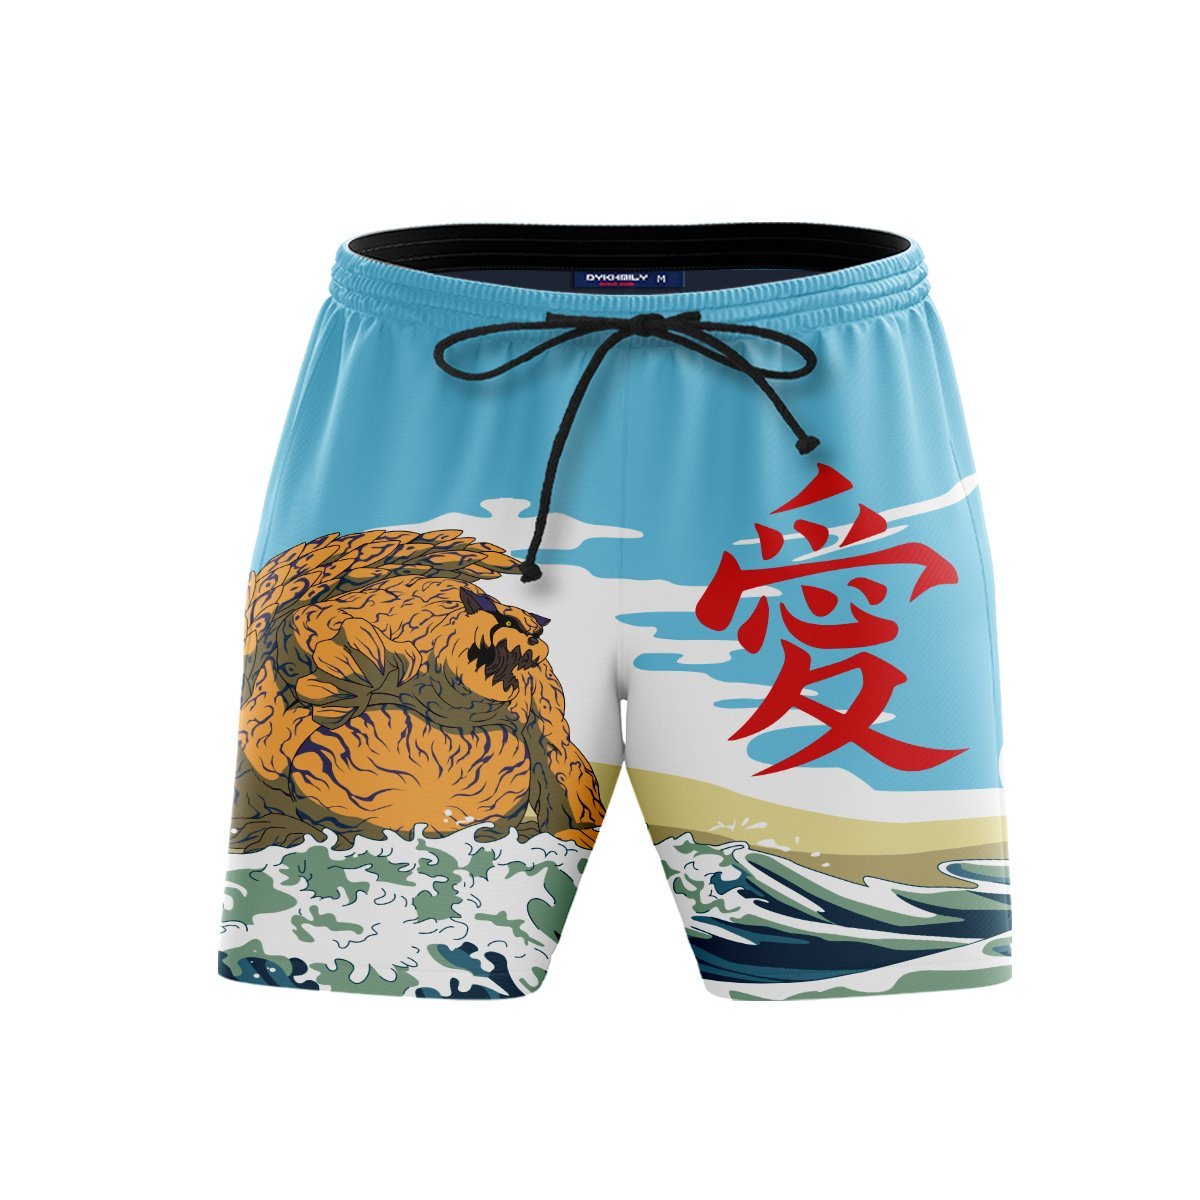 Gaara Summer Beach Shorts FDM3107 S Official Anime Swimsuit Merch